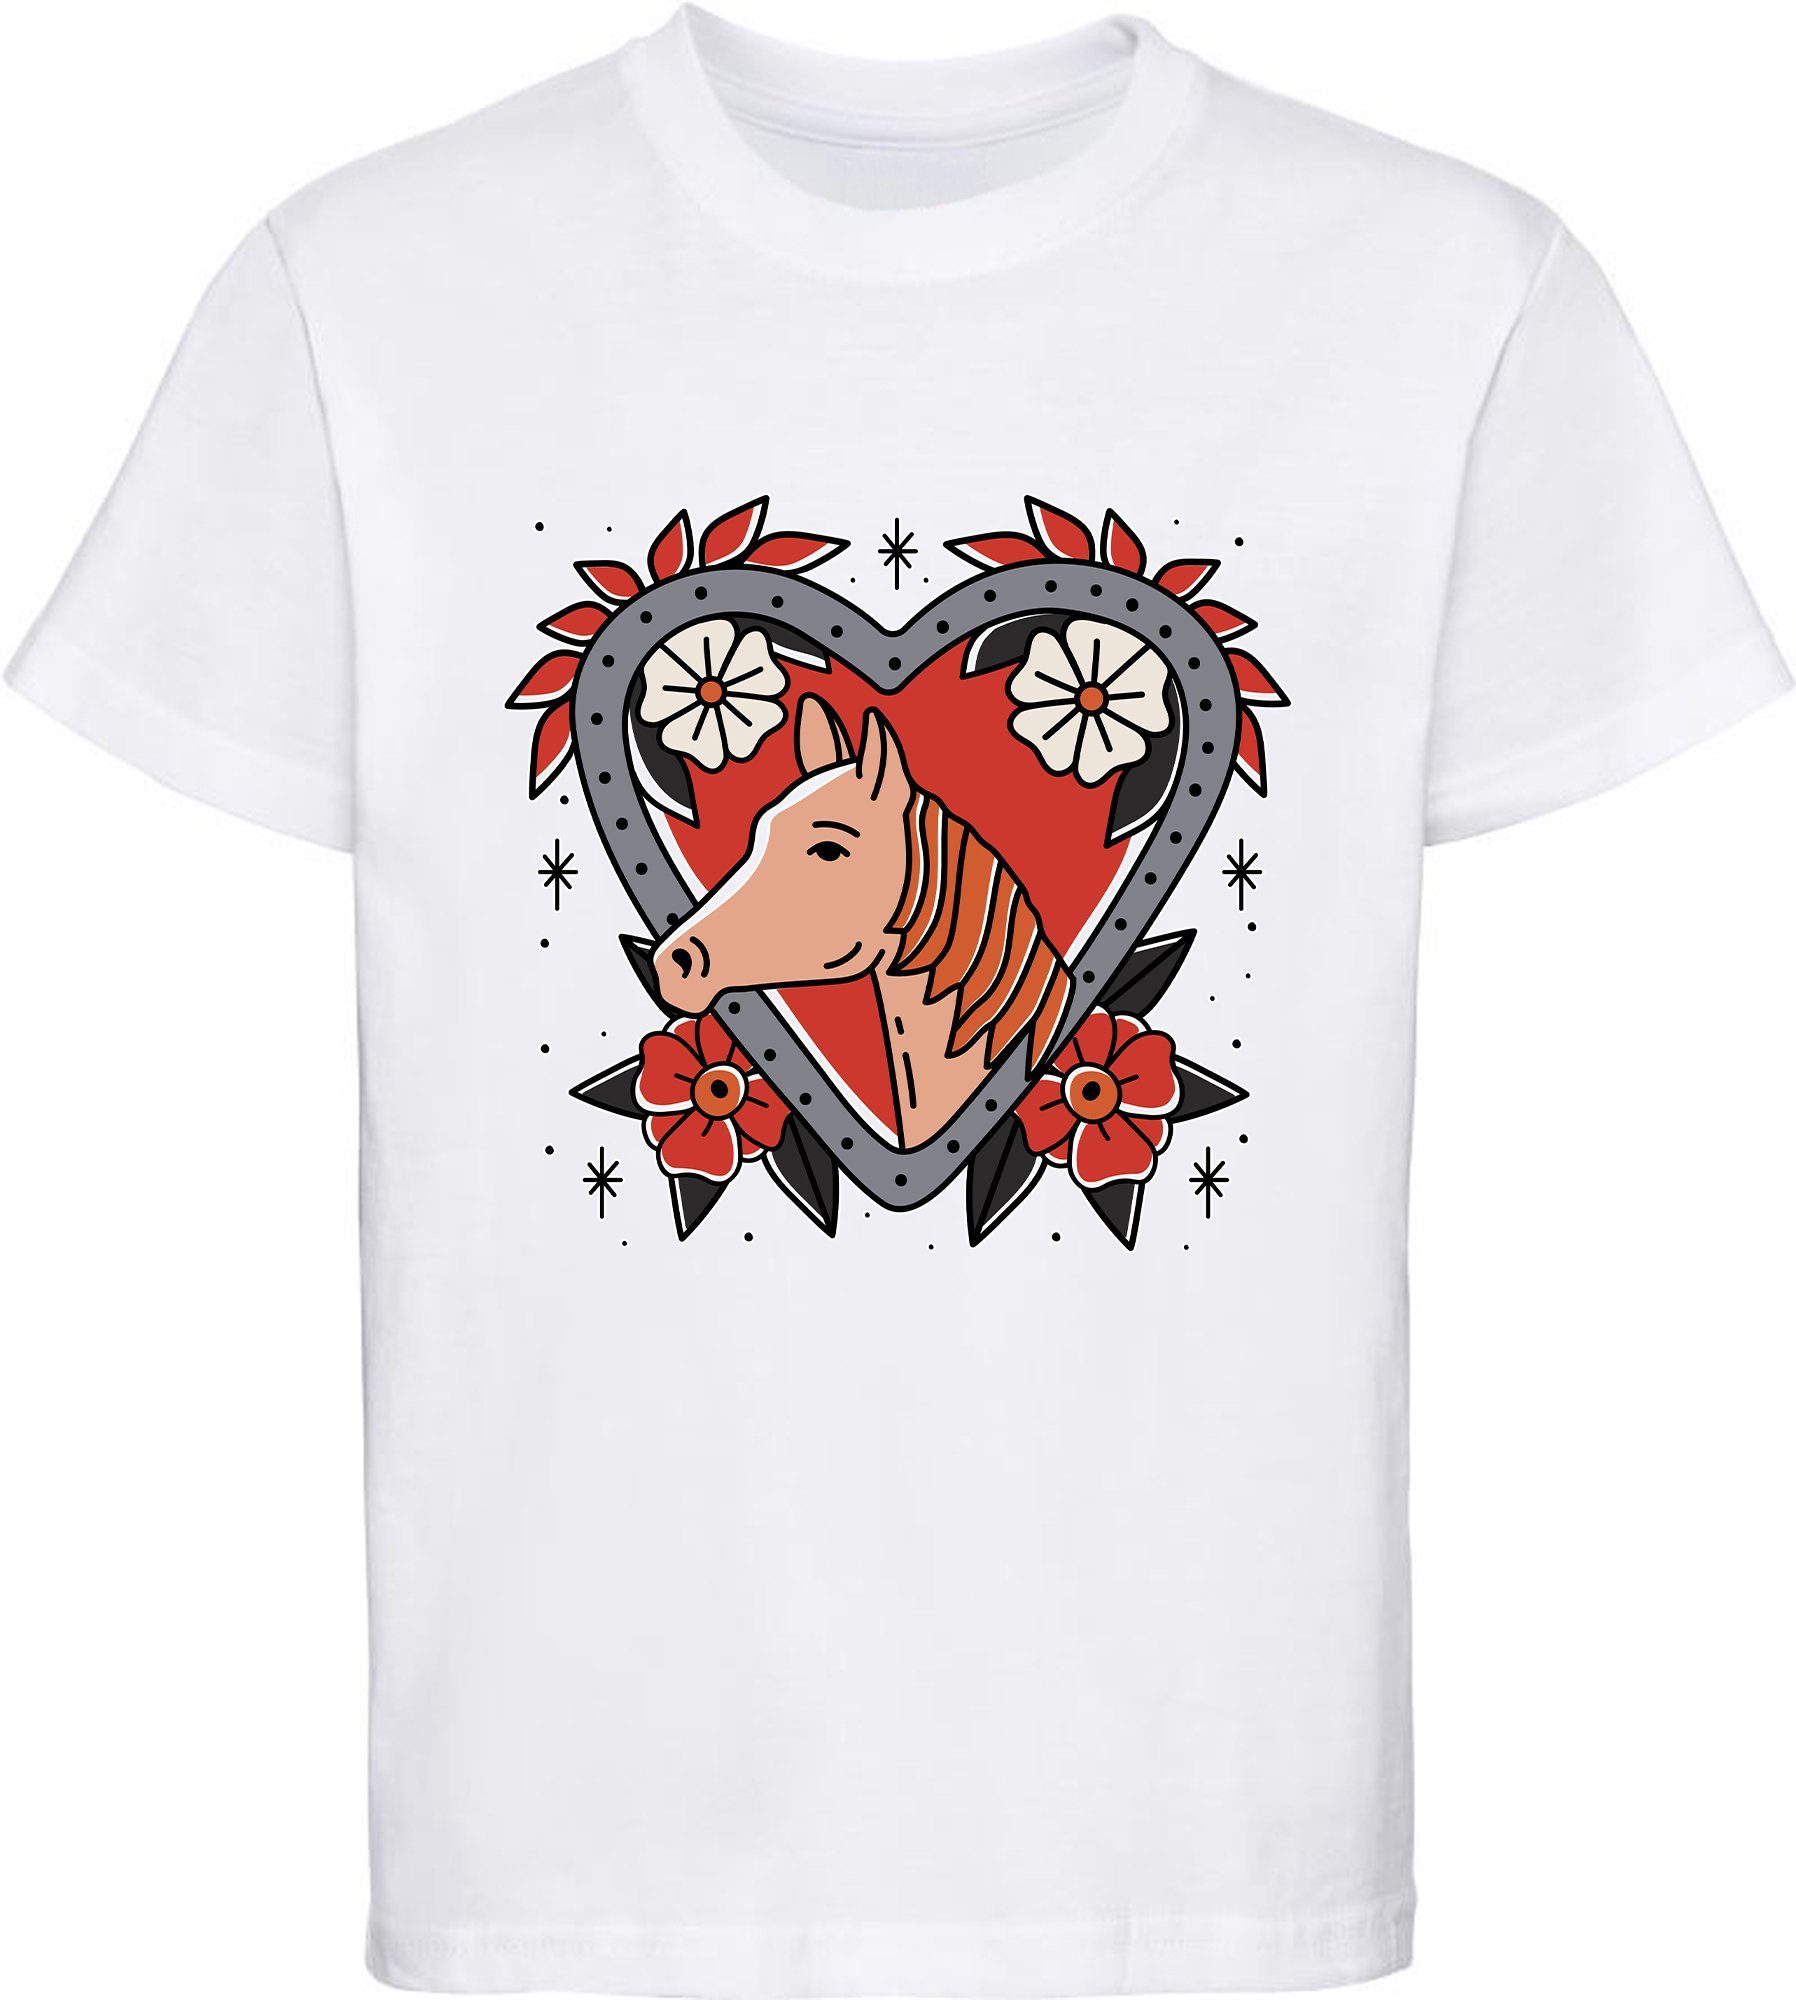 MyDesign24 Print-Shirt bedrucktes Mädchen mit T-Shirt Pferd Blumenherz Baumwollshirt weiss rot, rosa, i137 im mit schwarz, Aufdruck, weiß